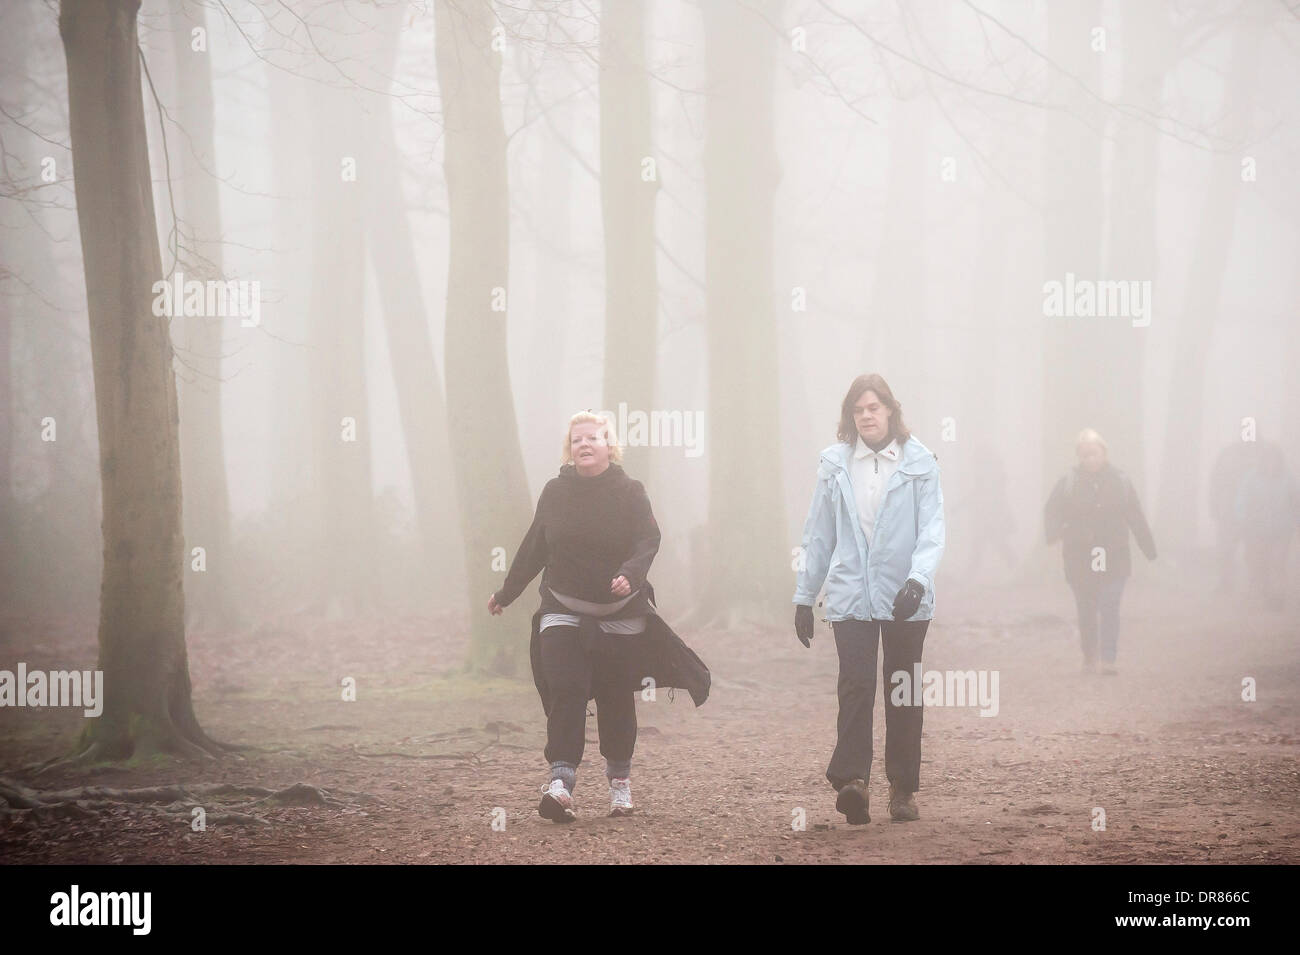 Brentwood, Essex, Regno Unito. 21 gennaio 2014 Walkers prendono il loro esercizio mattutino nonostante la fitta nebbia avvolgenti campagna dell'Essex. Fotografo: Gordon Scammell/Alamy Live News Foto Stock